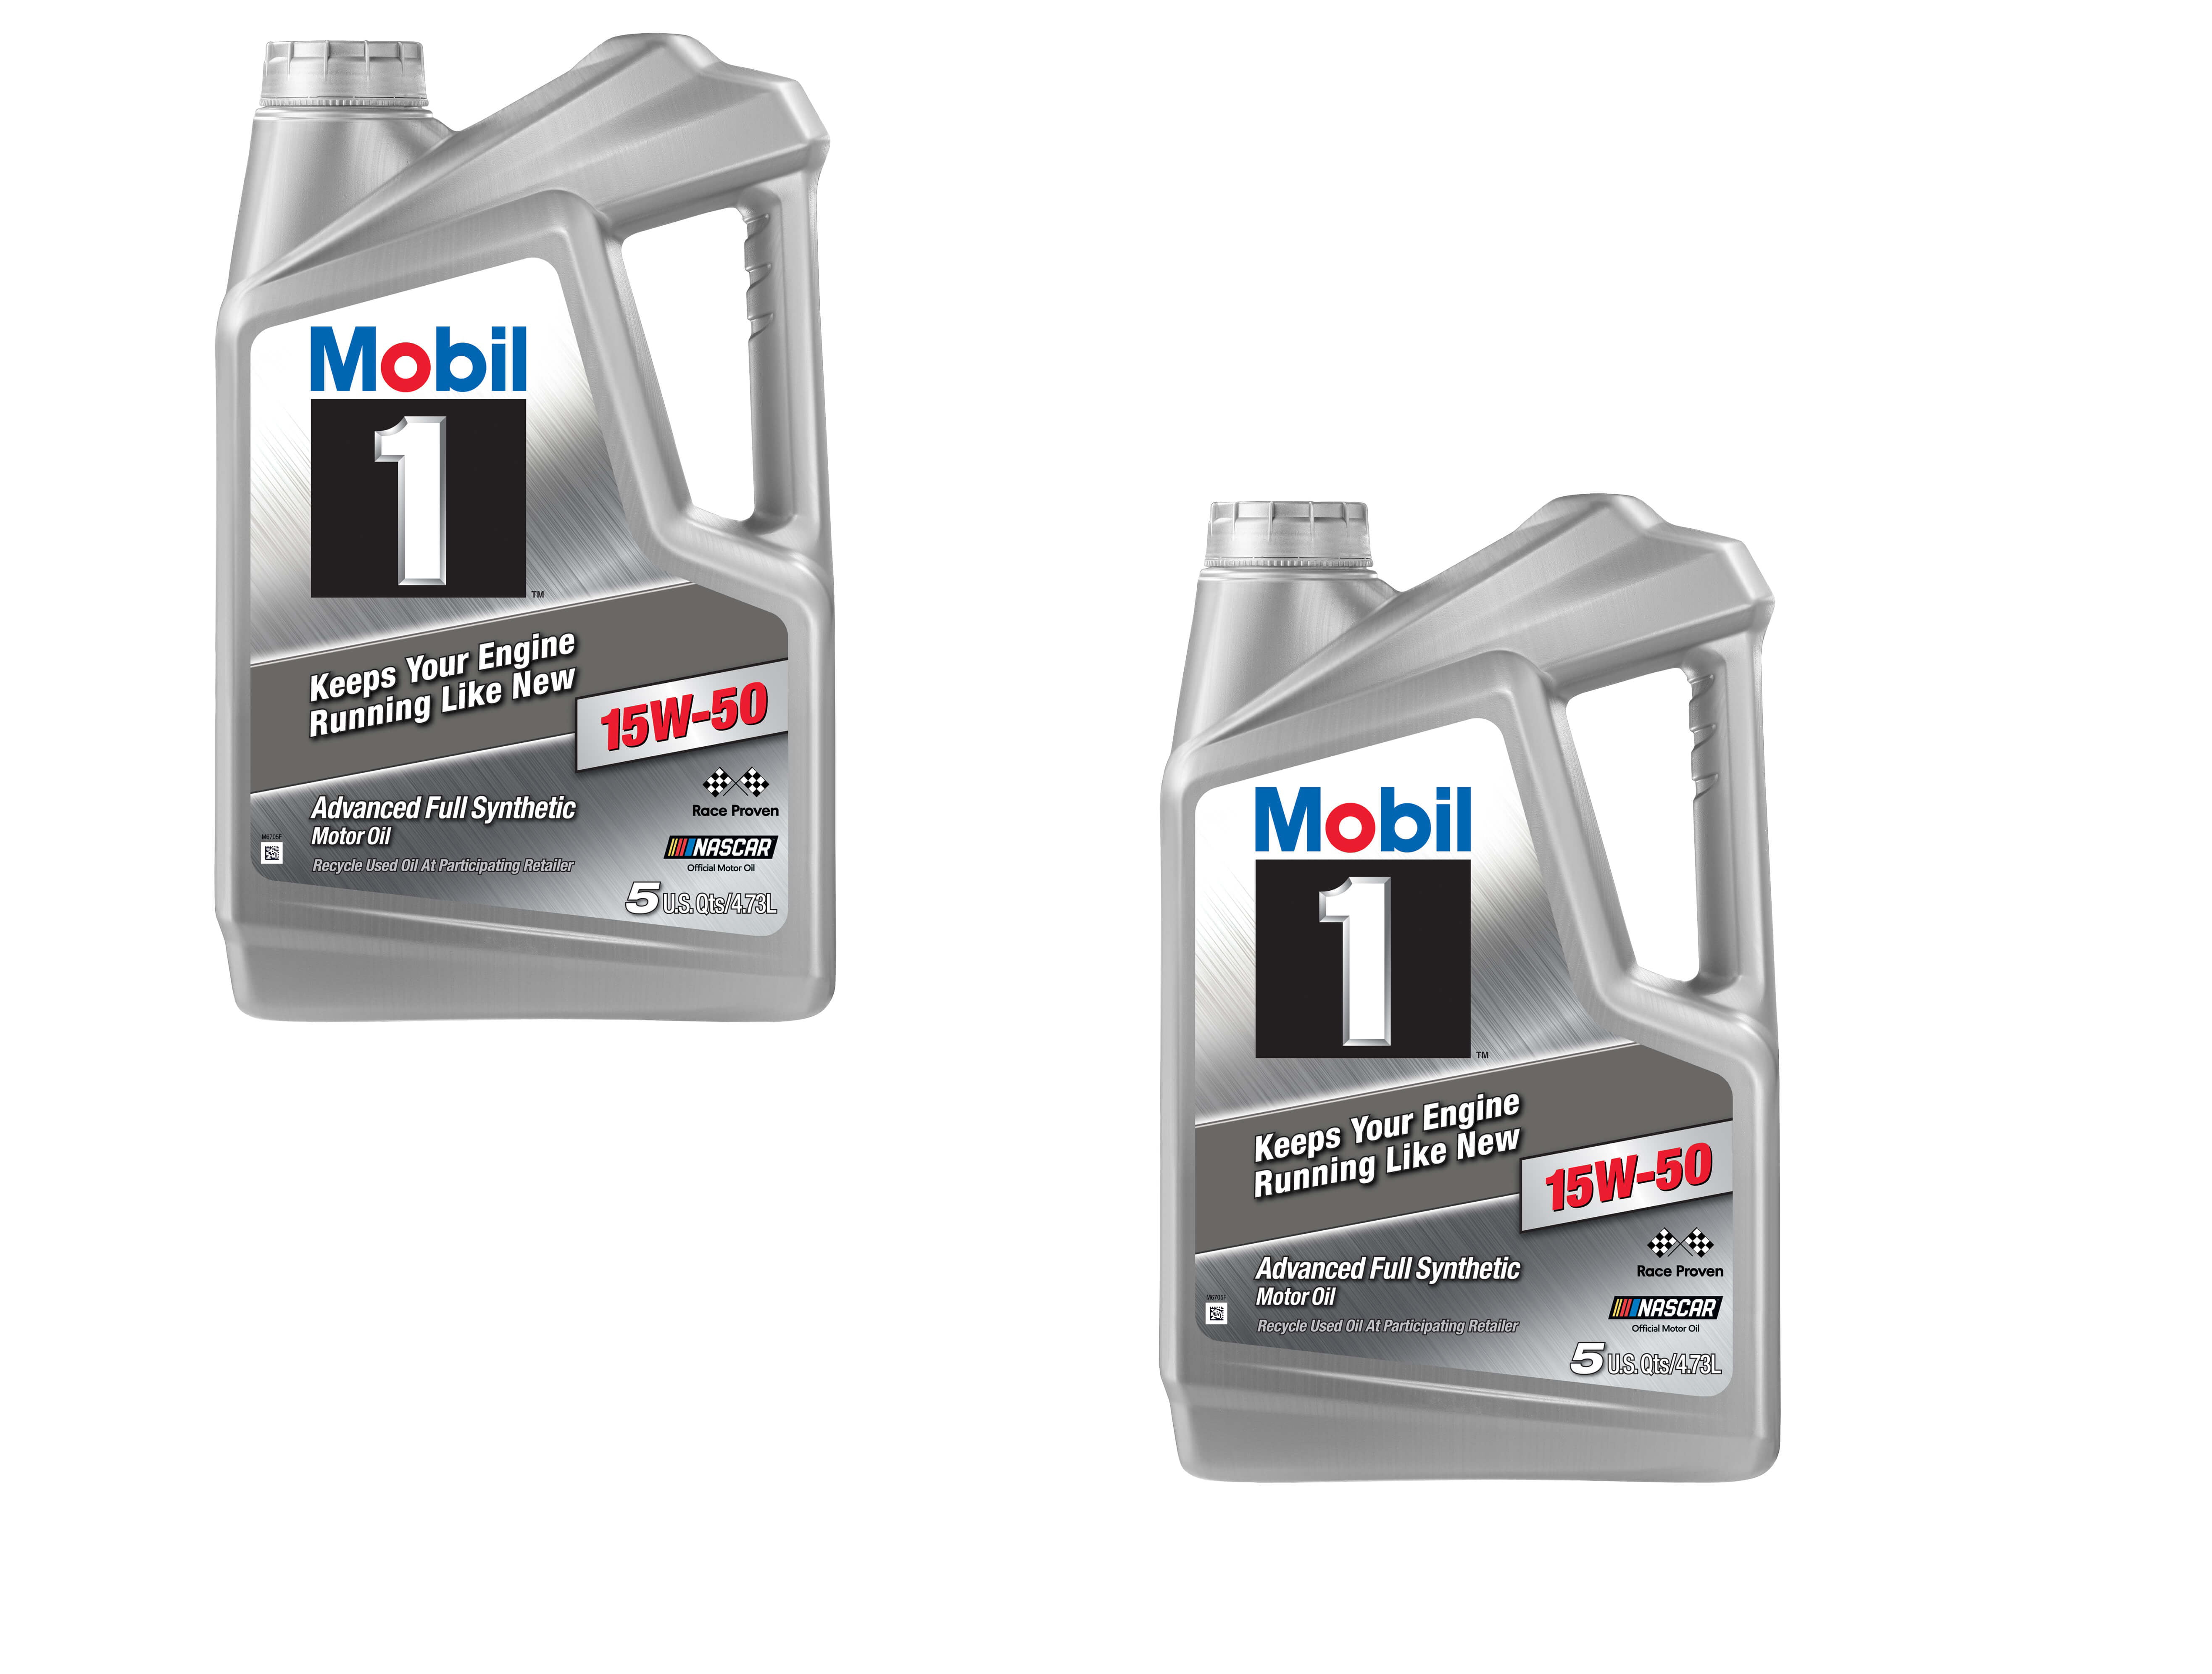 Mobil 1 Advanced Full Synthetic Motor Oil 15W-50, 5 Quart - 2 Pack